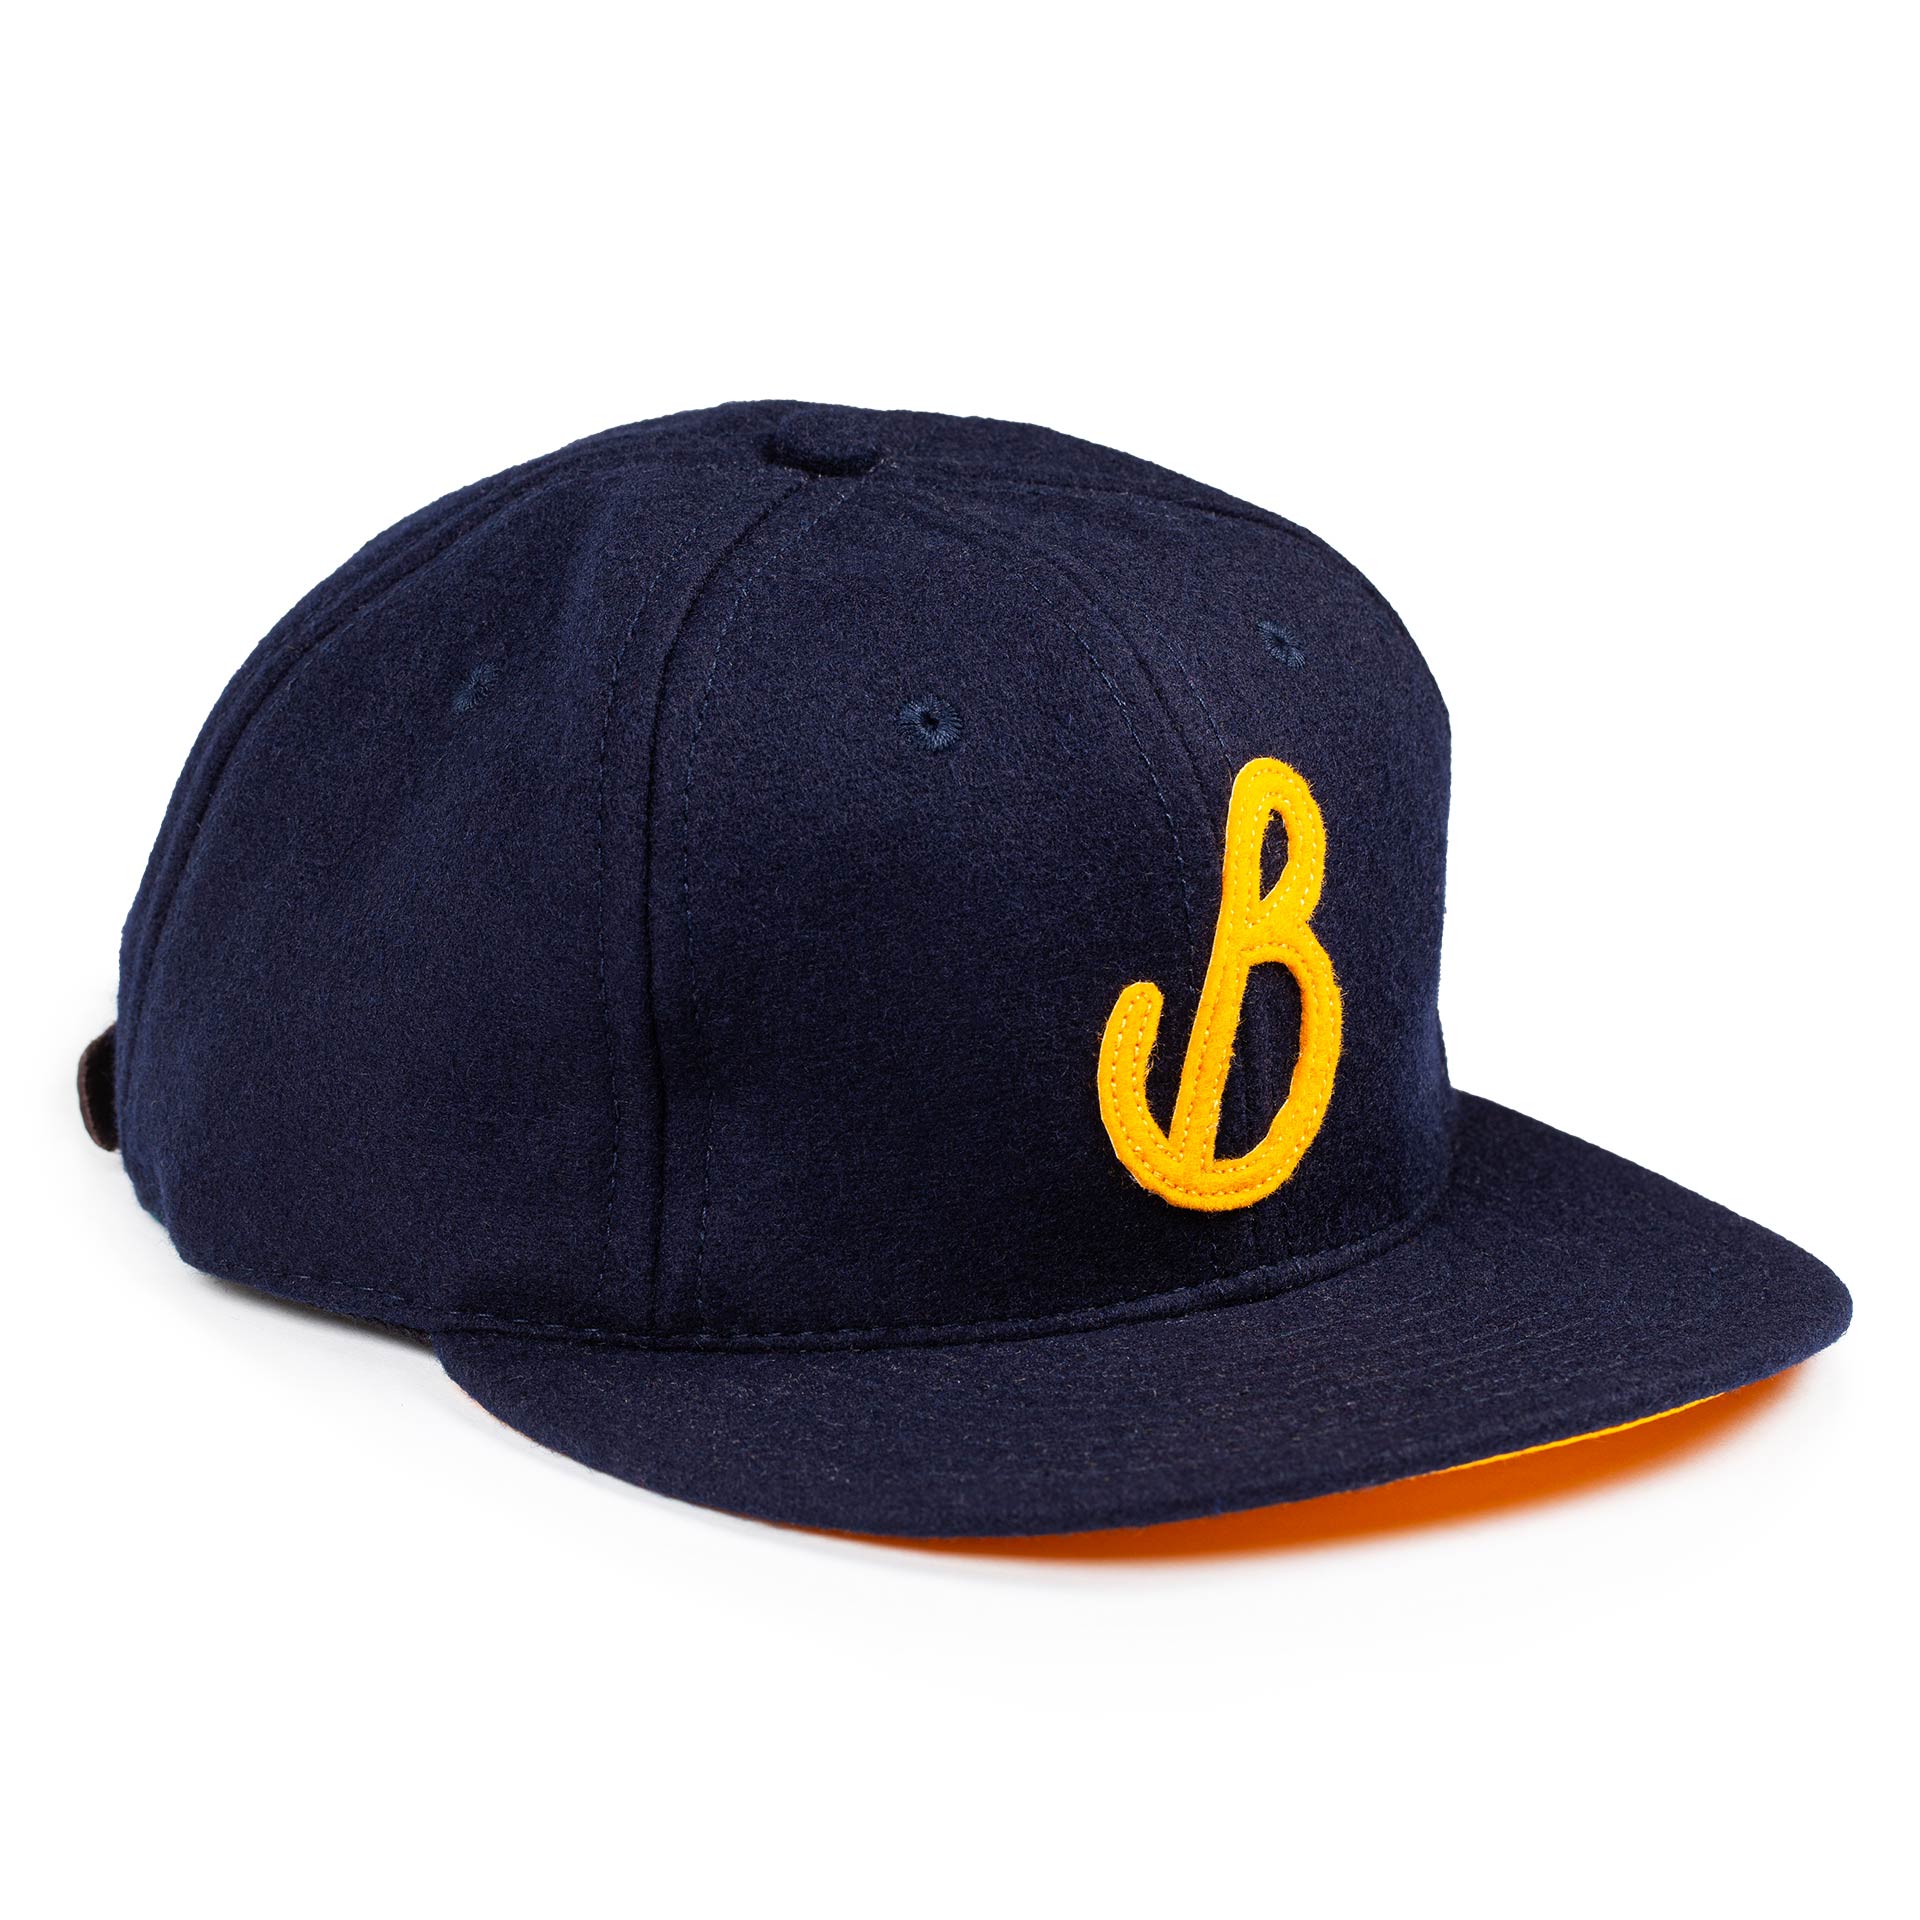 wool baseball cap